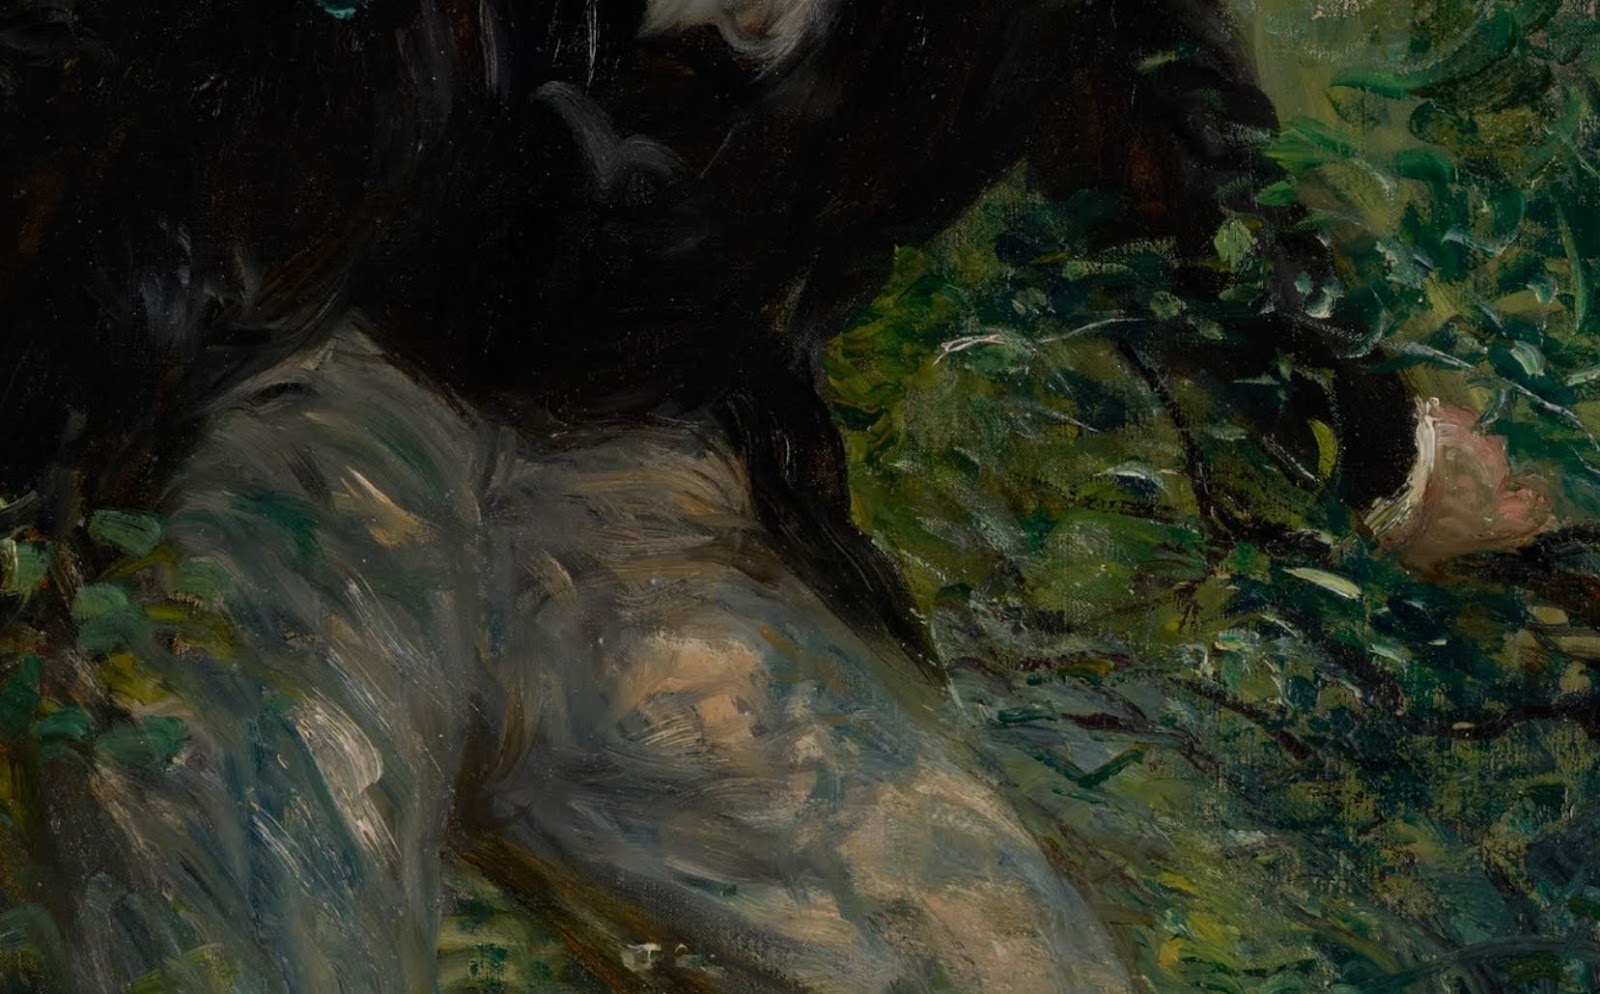 Pierre+Auguste+Renoir-1841-1-19 (276).JPG